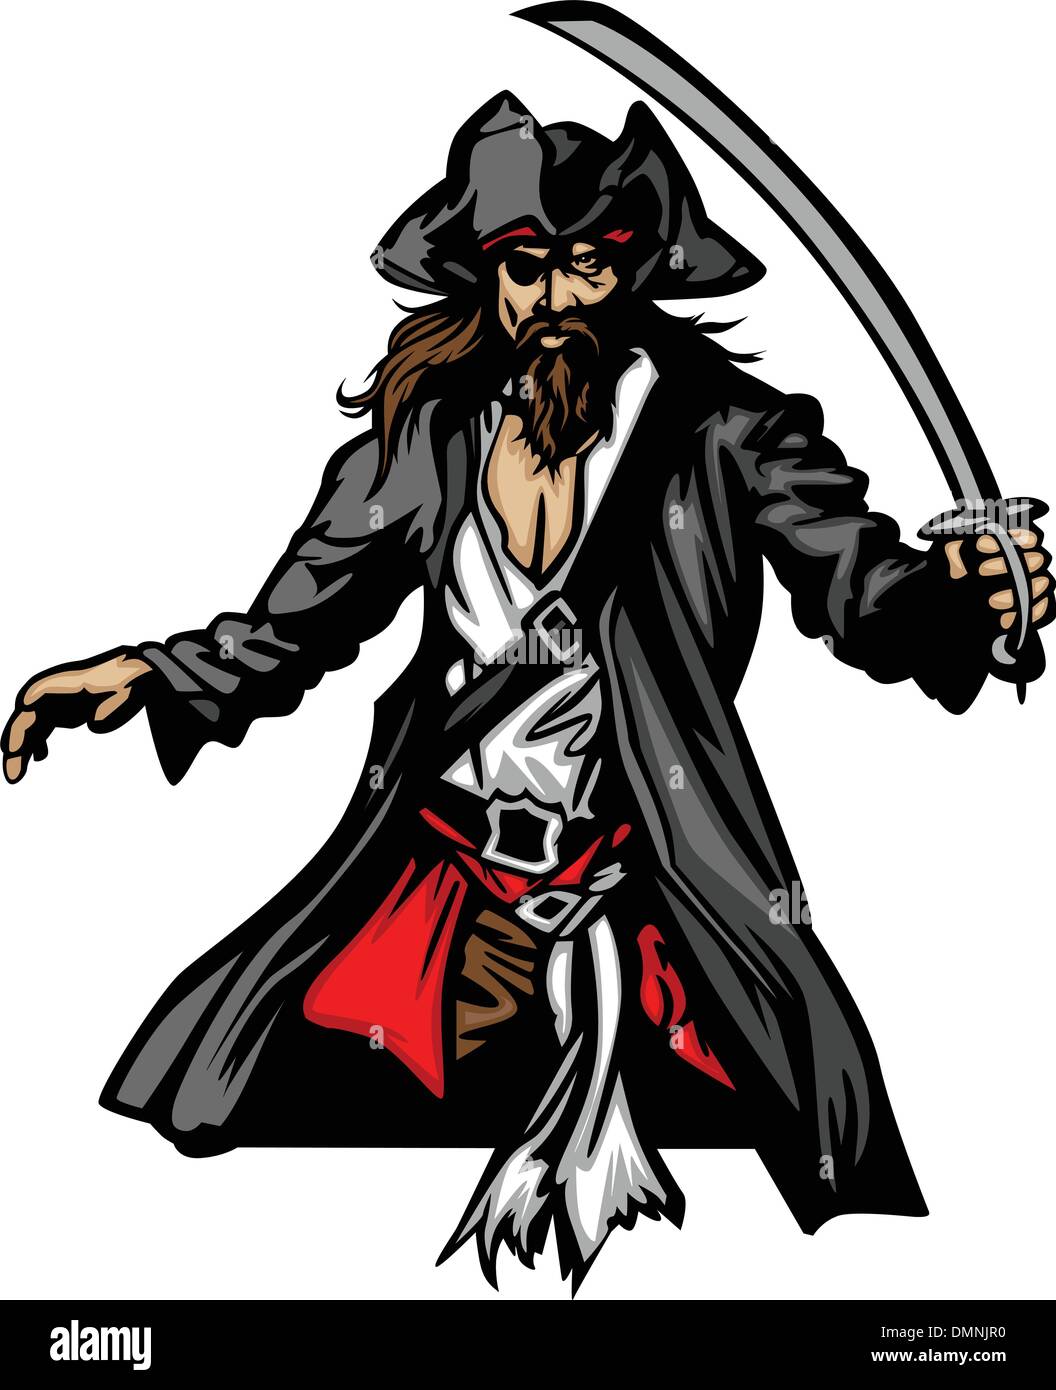 Piraten-Maskottchen stehend mit Schwert und Hut graphischen Vektor-Illustration Stock Vektor